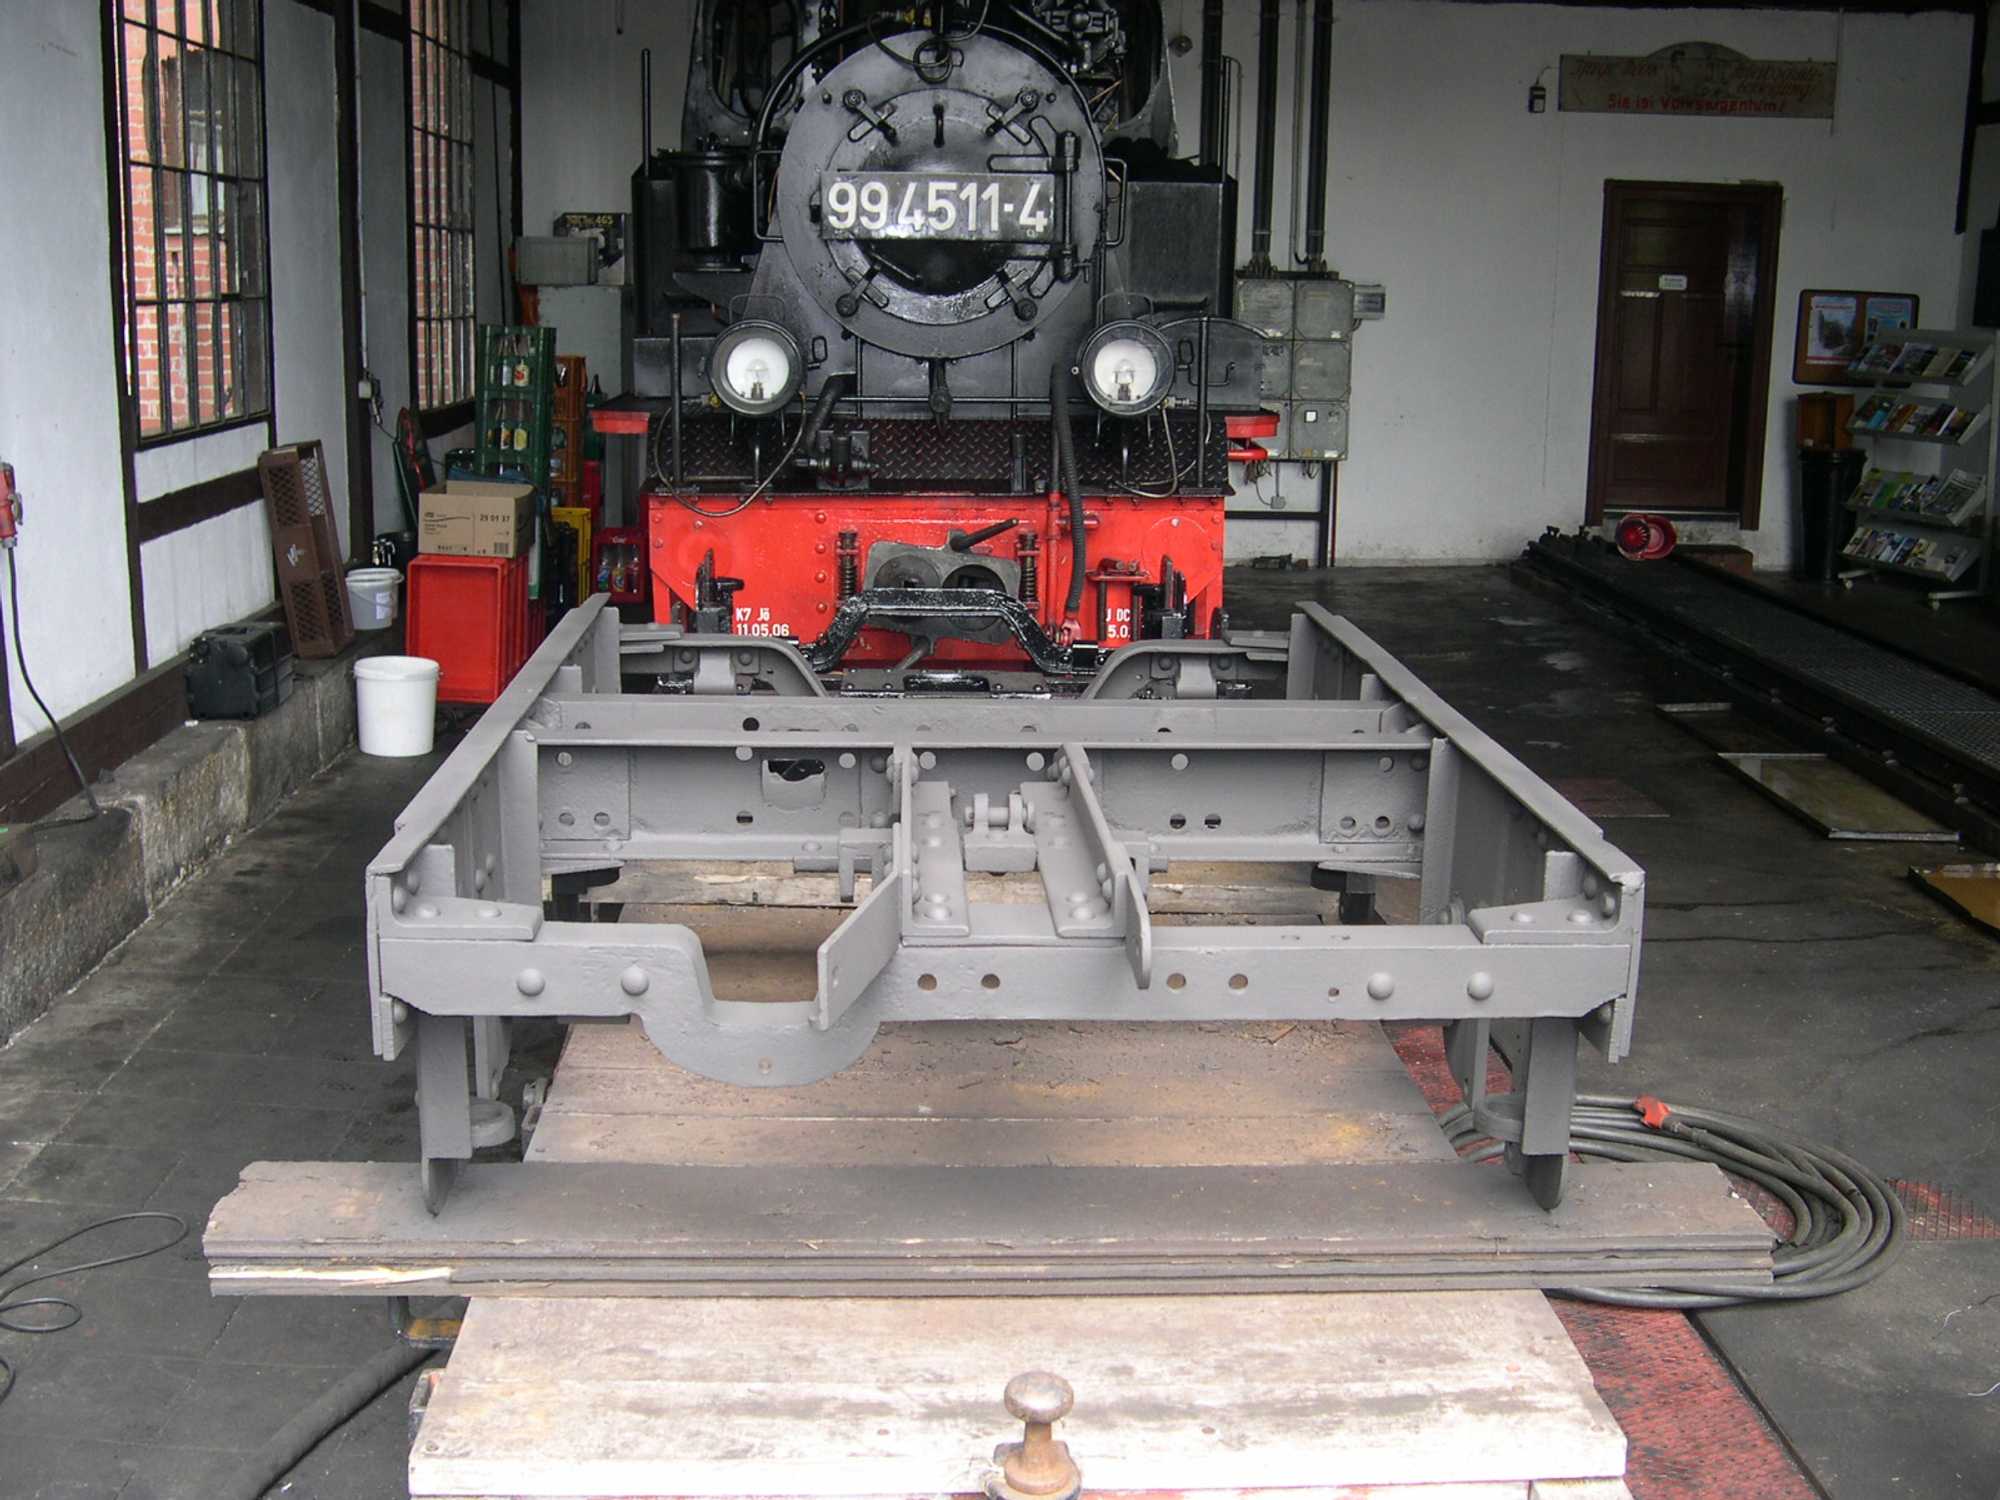 Das sandgestrahlte Drehgestell von Rollfahrzeug Rf4 97-03-78 im Stand 1 des Lokschuppens vor Meppel 99 4511-4.